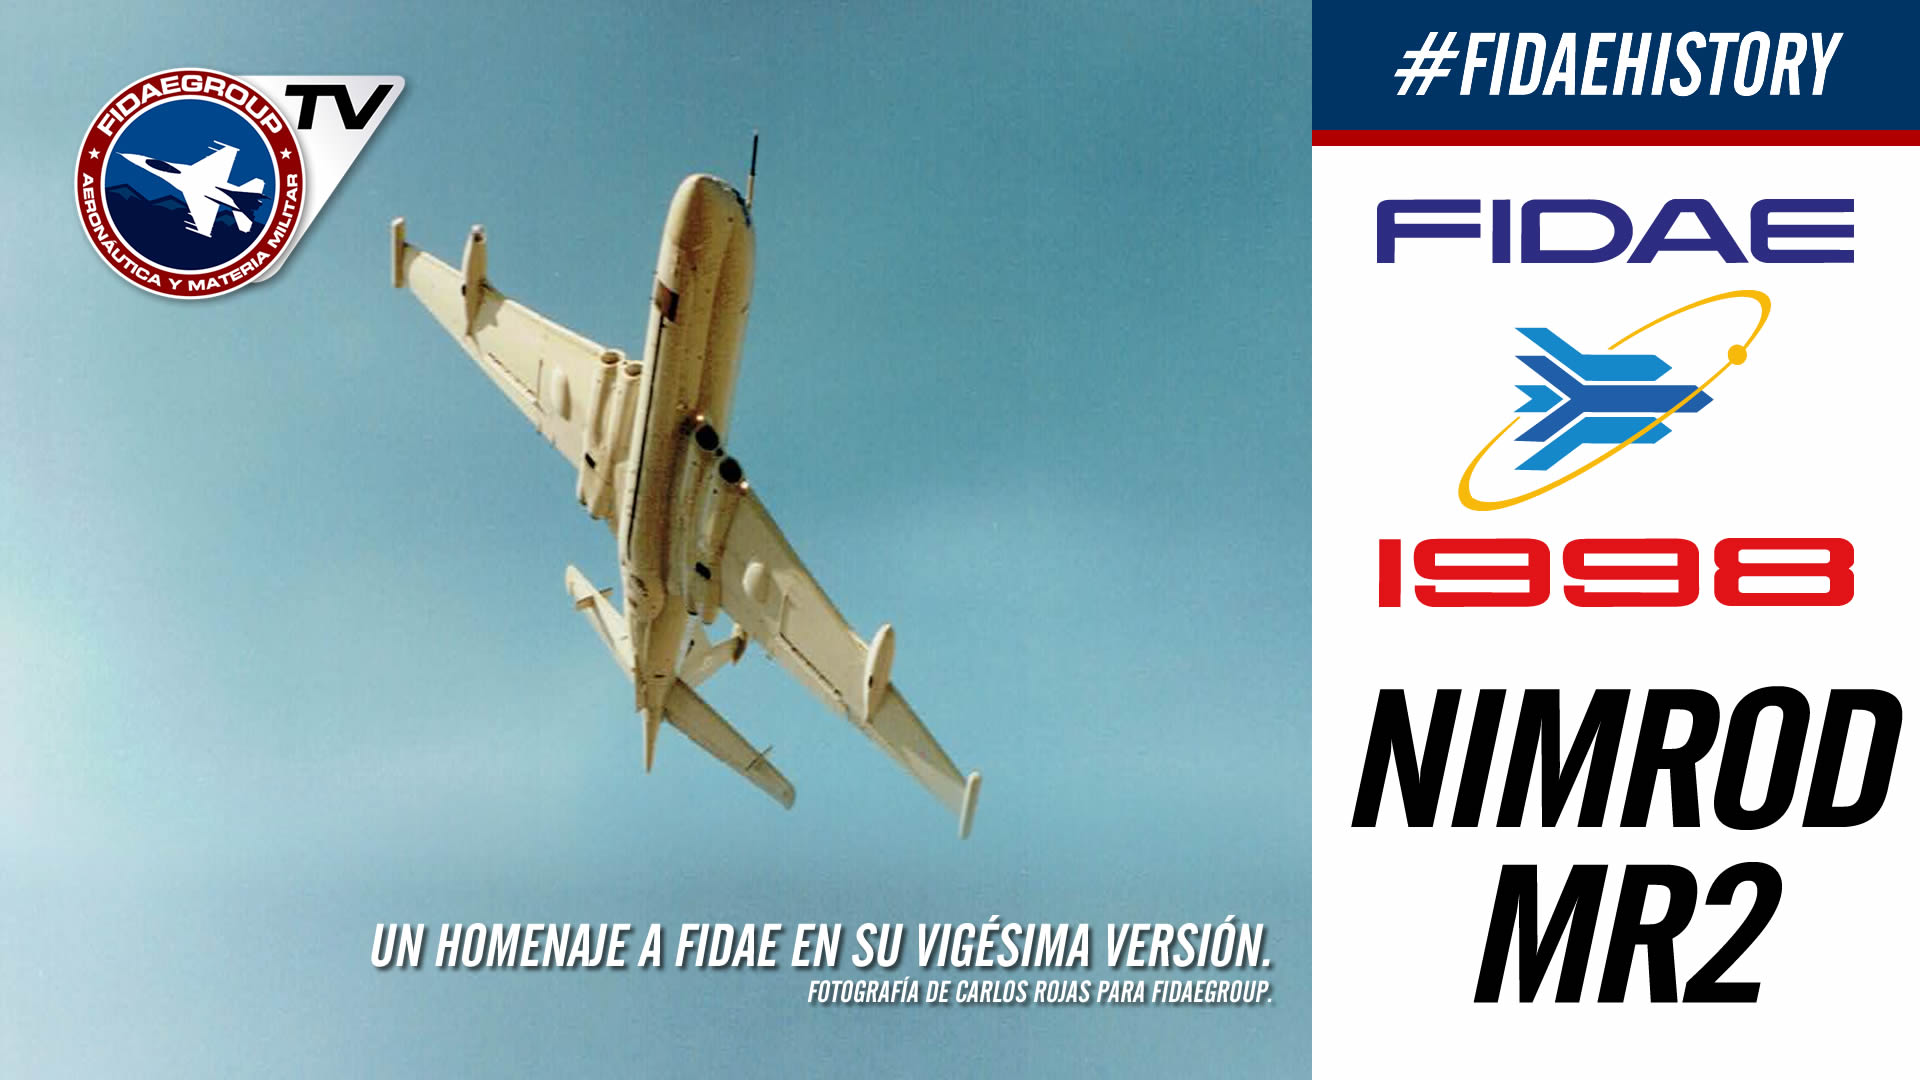 Demostración aérea de Nimrod Mr2 en FIDAE 1998, Los Cerrillos